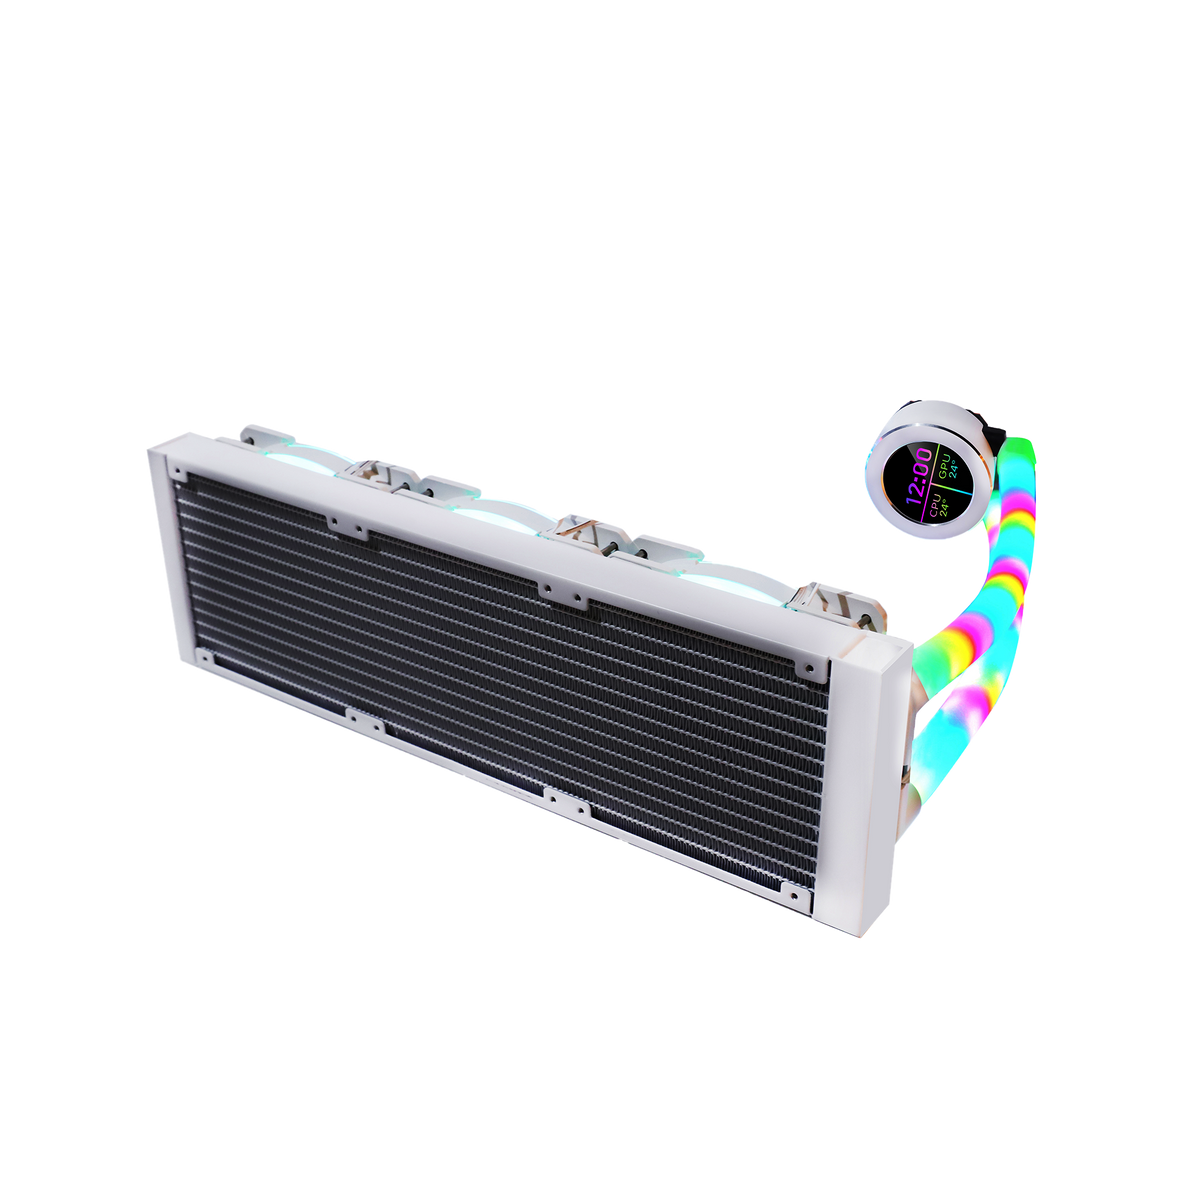 GAMEON - KRAKEN N360 LCD Display Liquid CPU Cooler 360mm With ARGB Tube - White